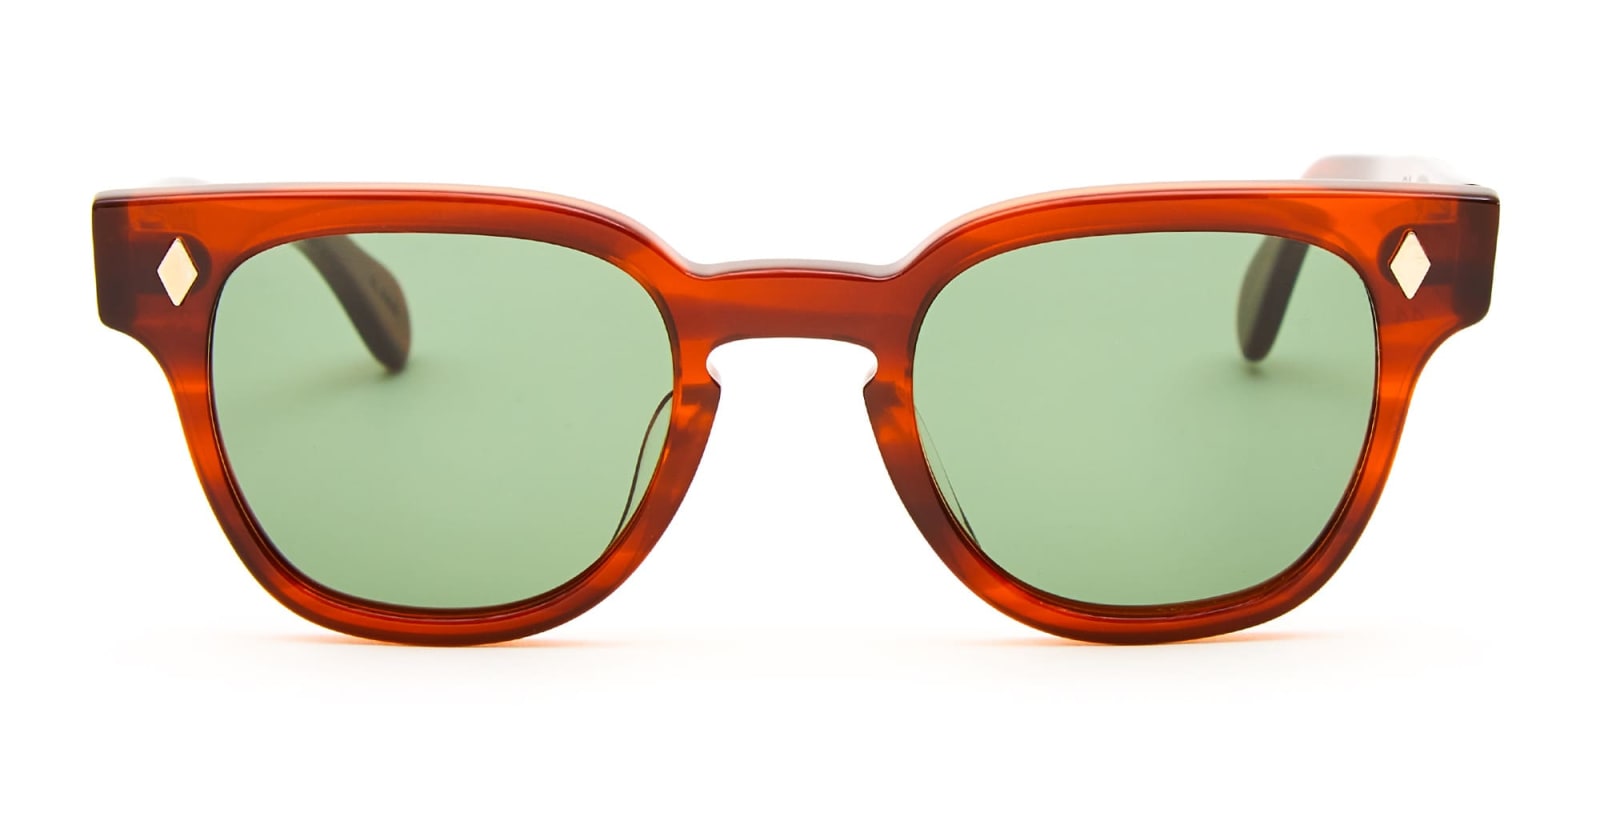 Julius Tart Optical Bryan 48x23 - Demi Amber / Green Lens Sunglasses In Brown